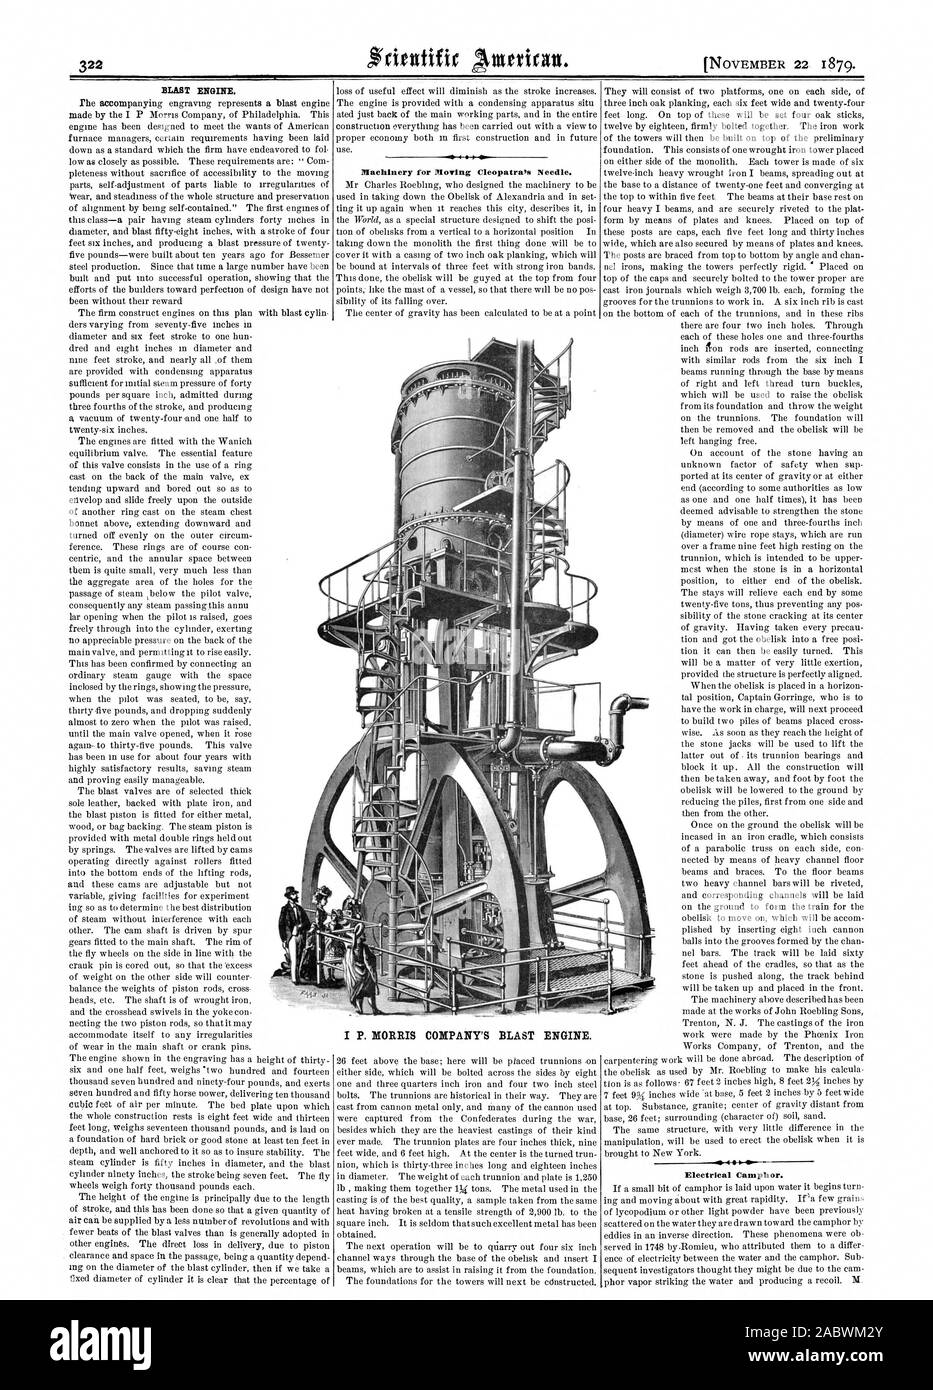 Maschinen für die beweglichen Cleopatra's Needle. Elektrische Kampfer. I S. MORRIS MOTOR COMPANY BLAST, Scientific American, 1879-11-22 Stockfoto